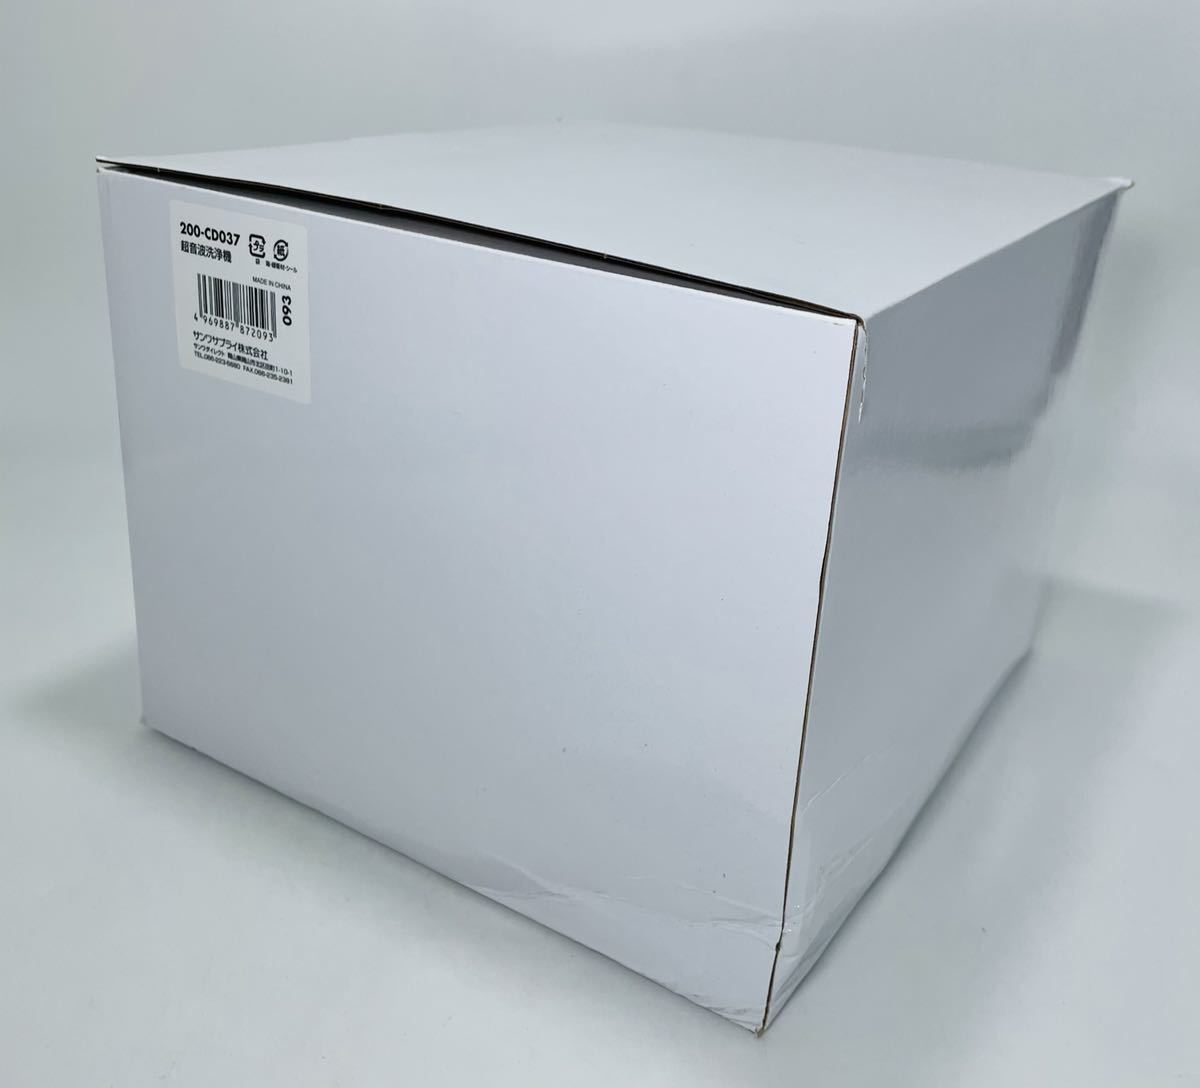 サンワサプライ 超音波洗浄機 分離式 200-CD 日本販売品